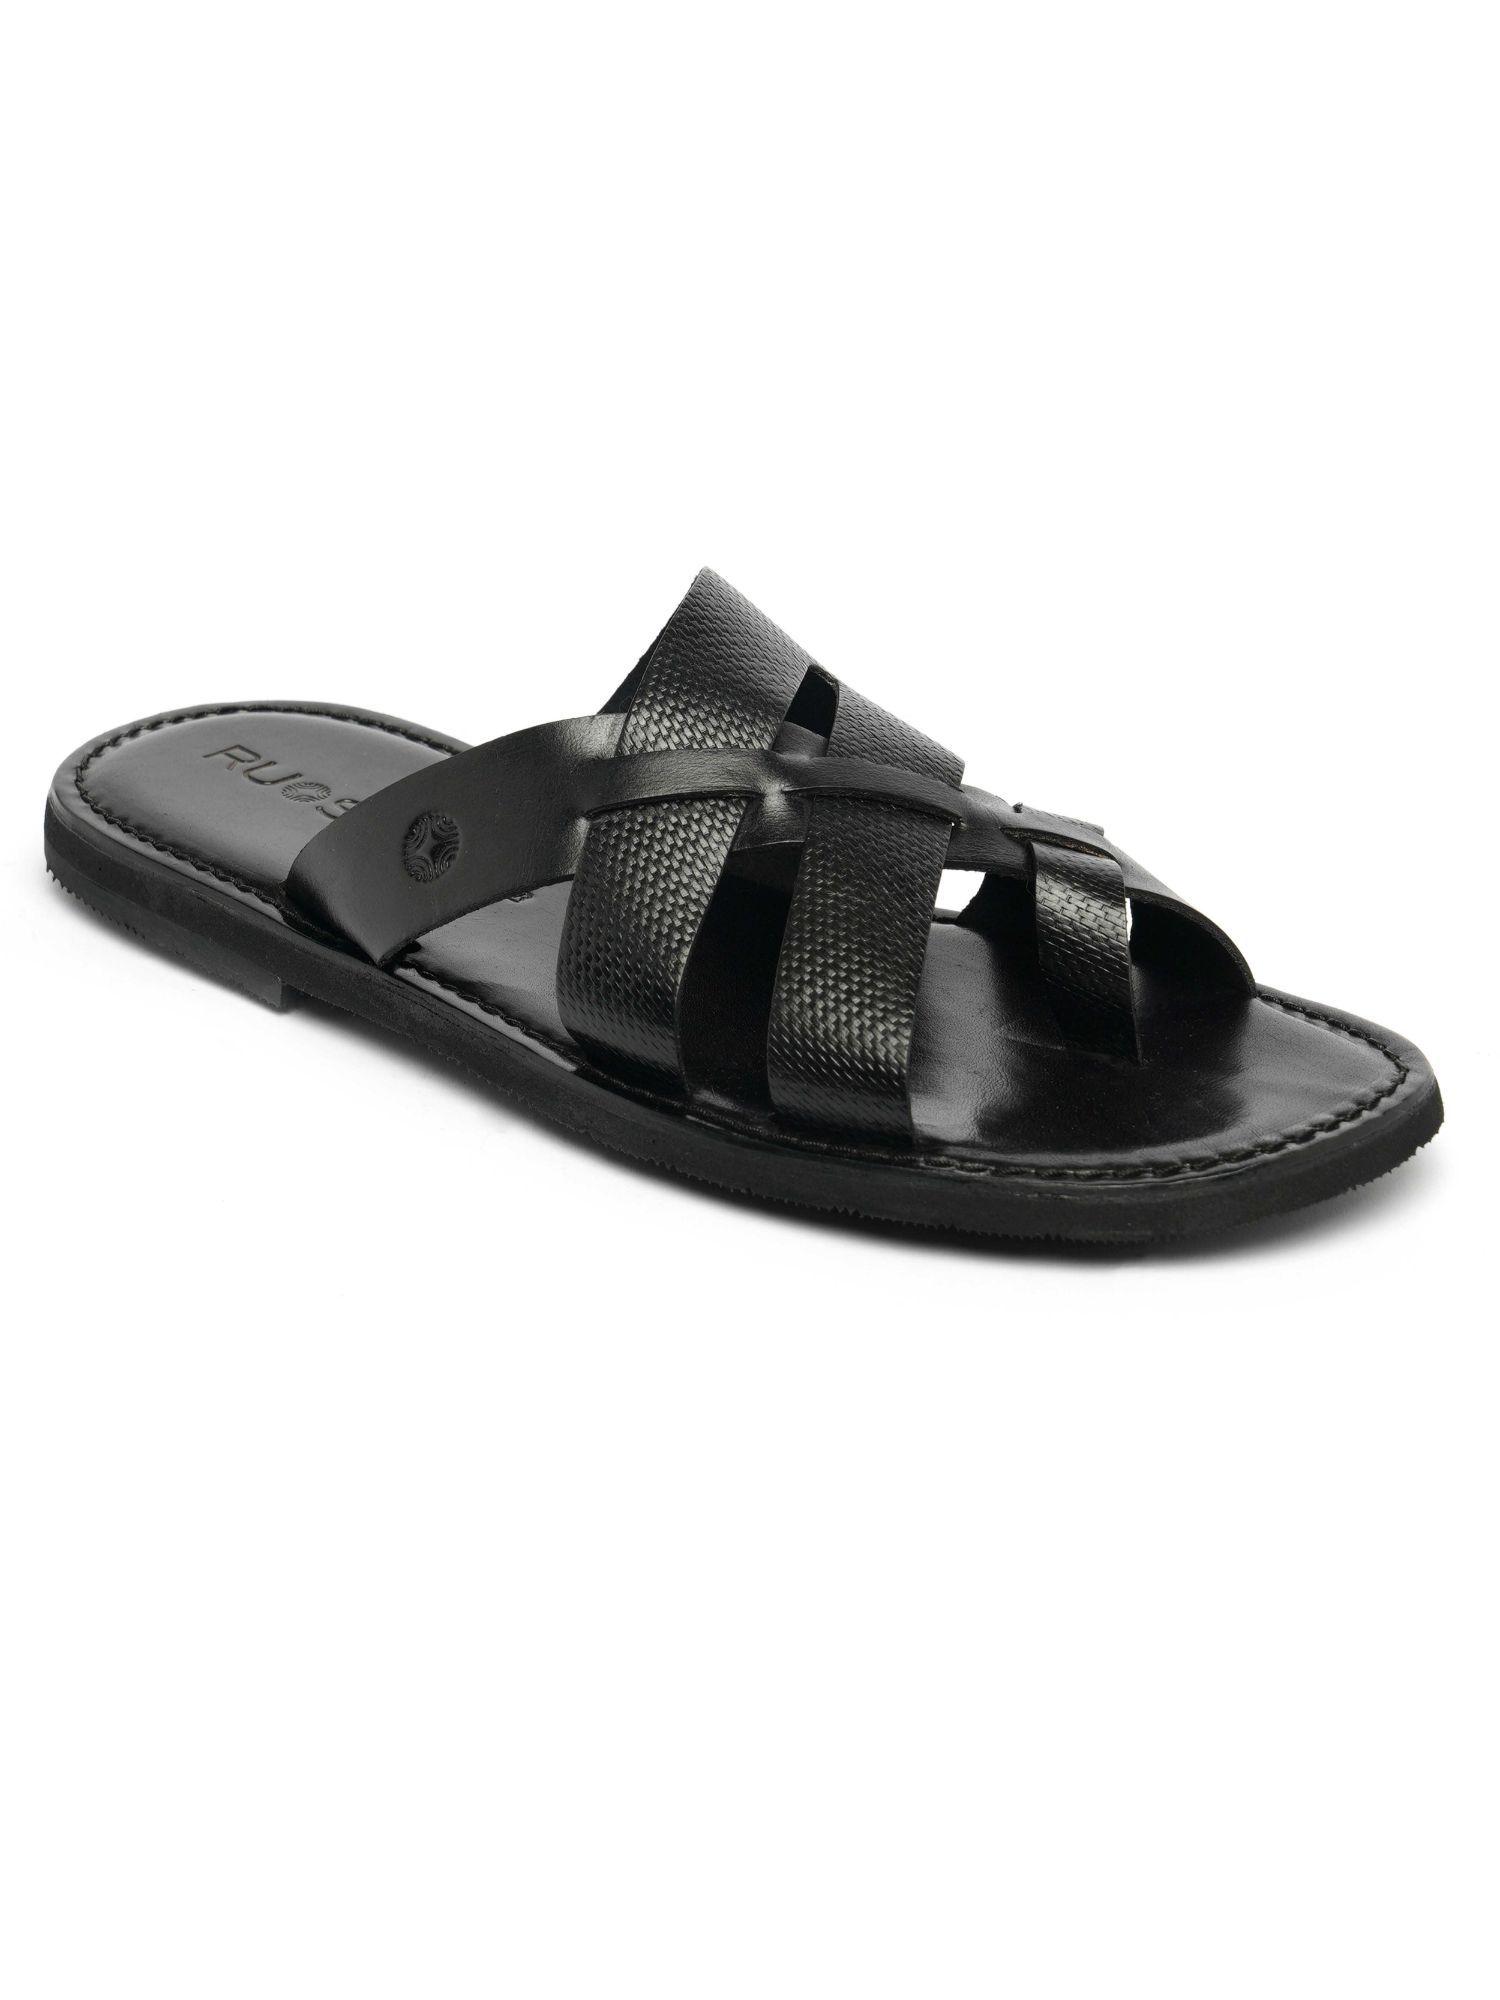 mens footwear open slipper black